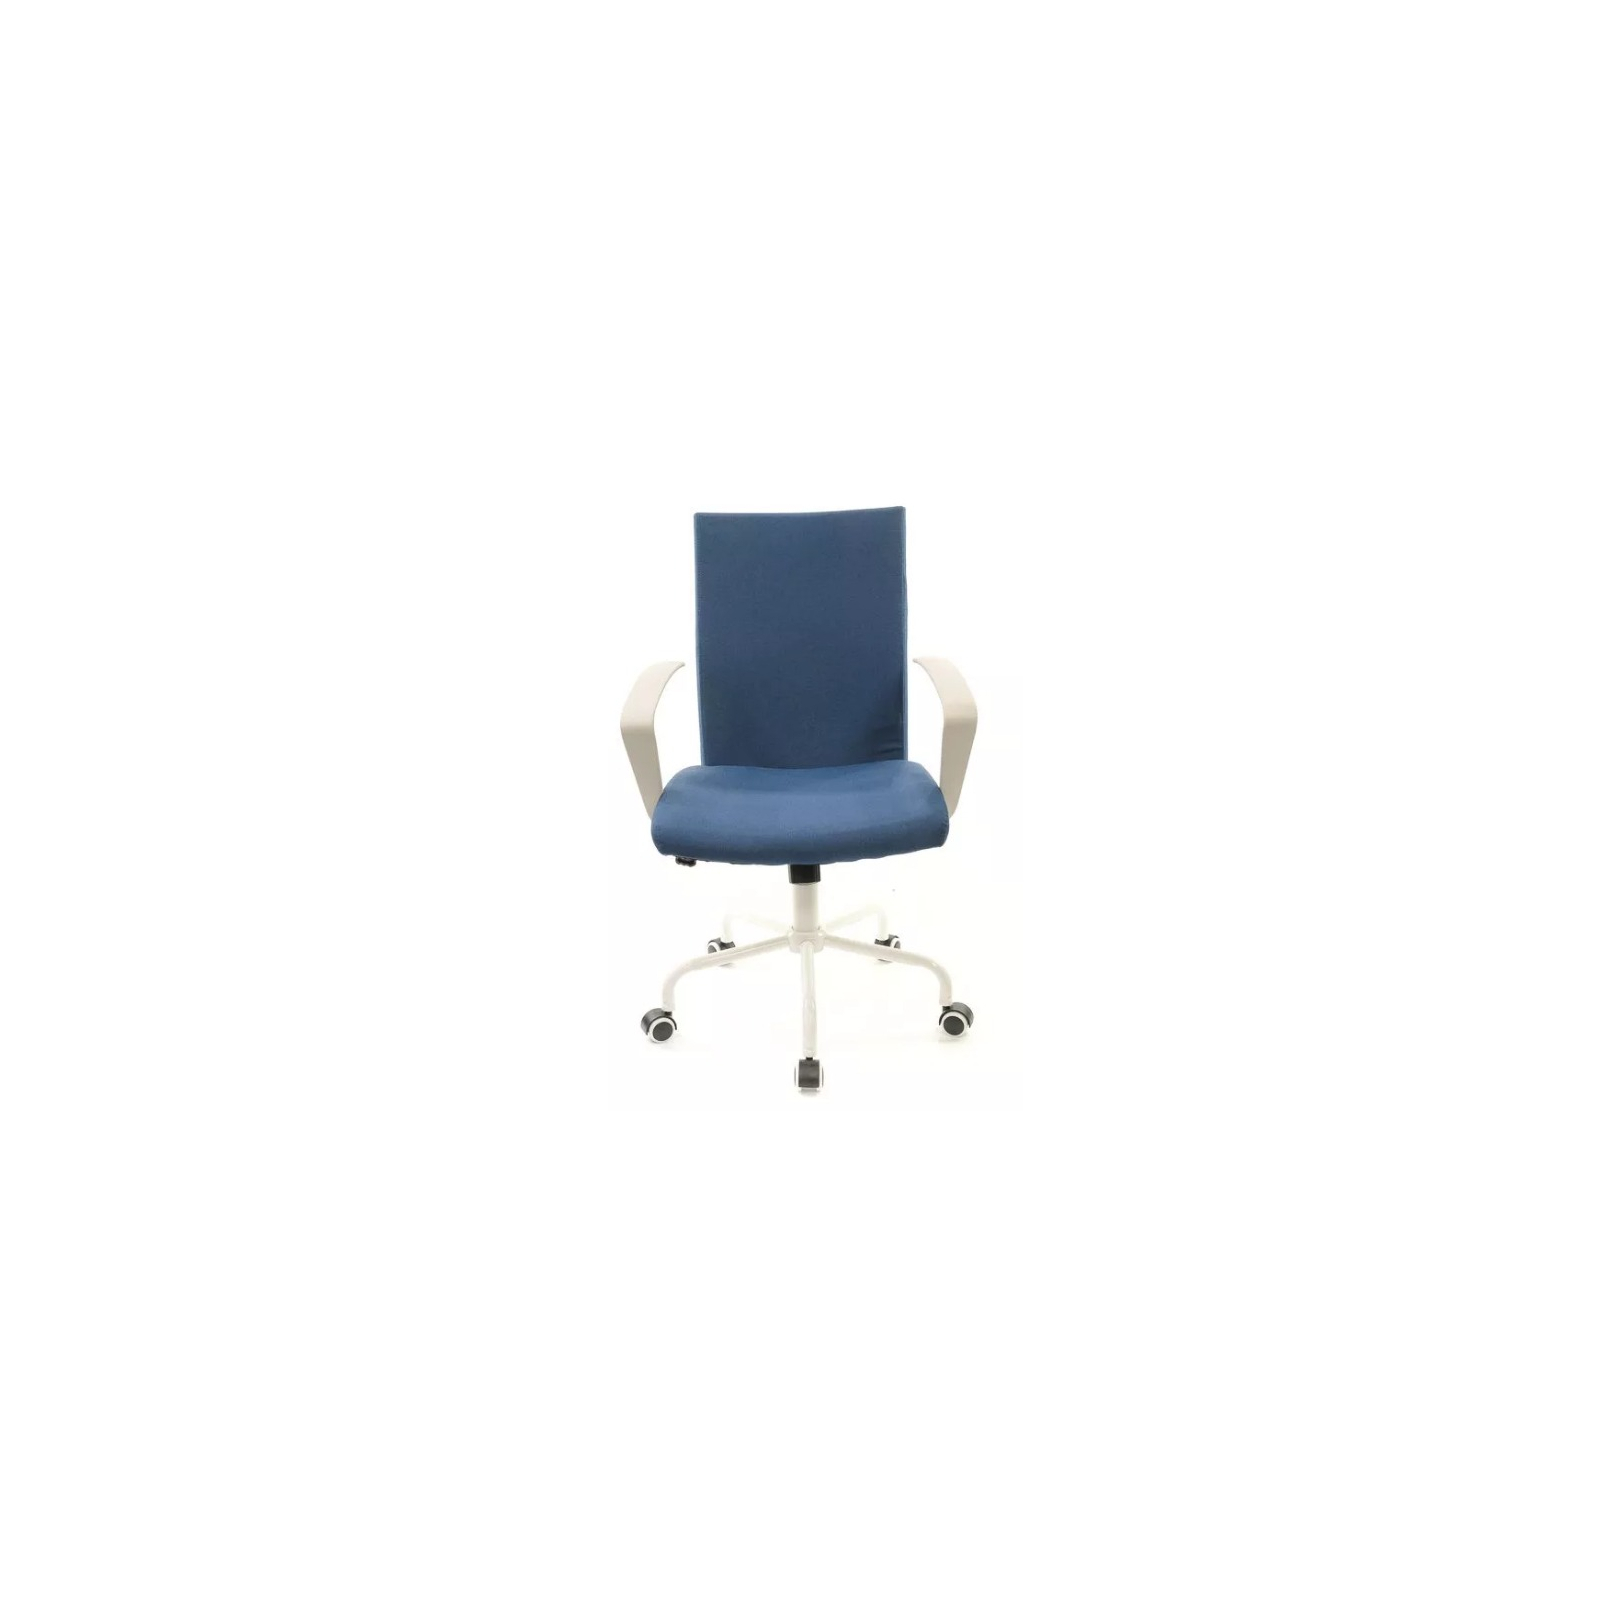 Офисное кресло Аклас Арси PL TILT Синее (12490) изображение 2